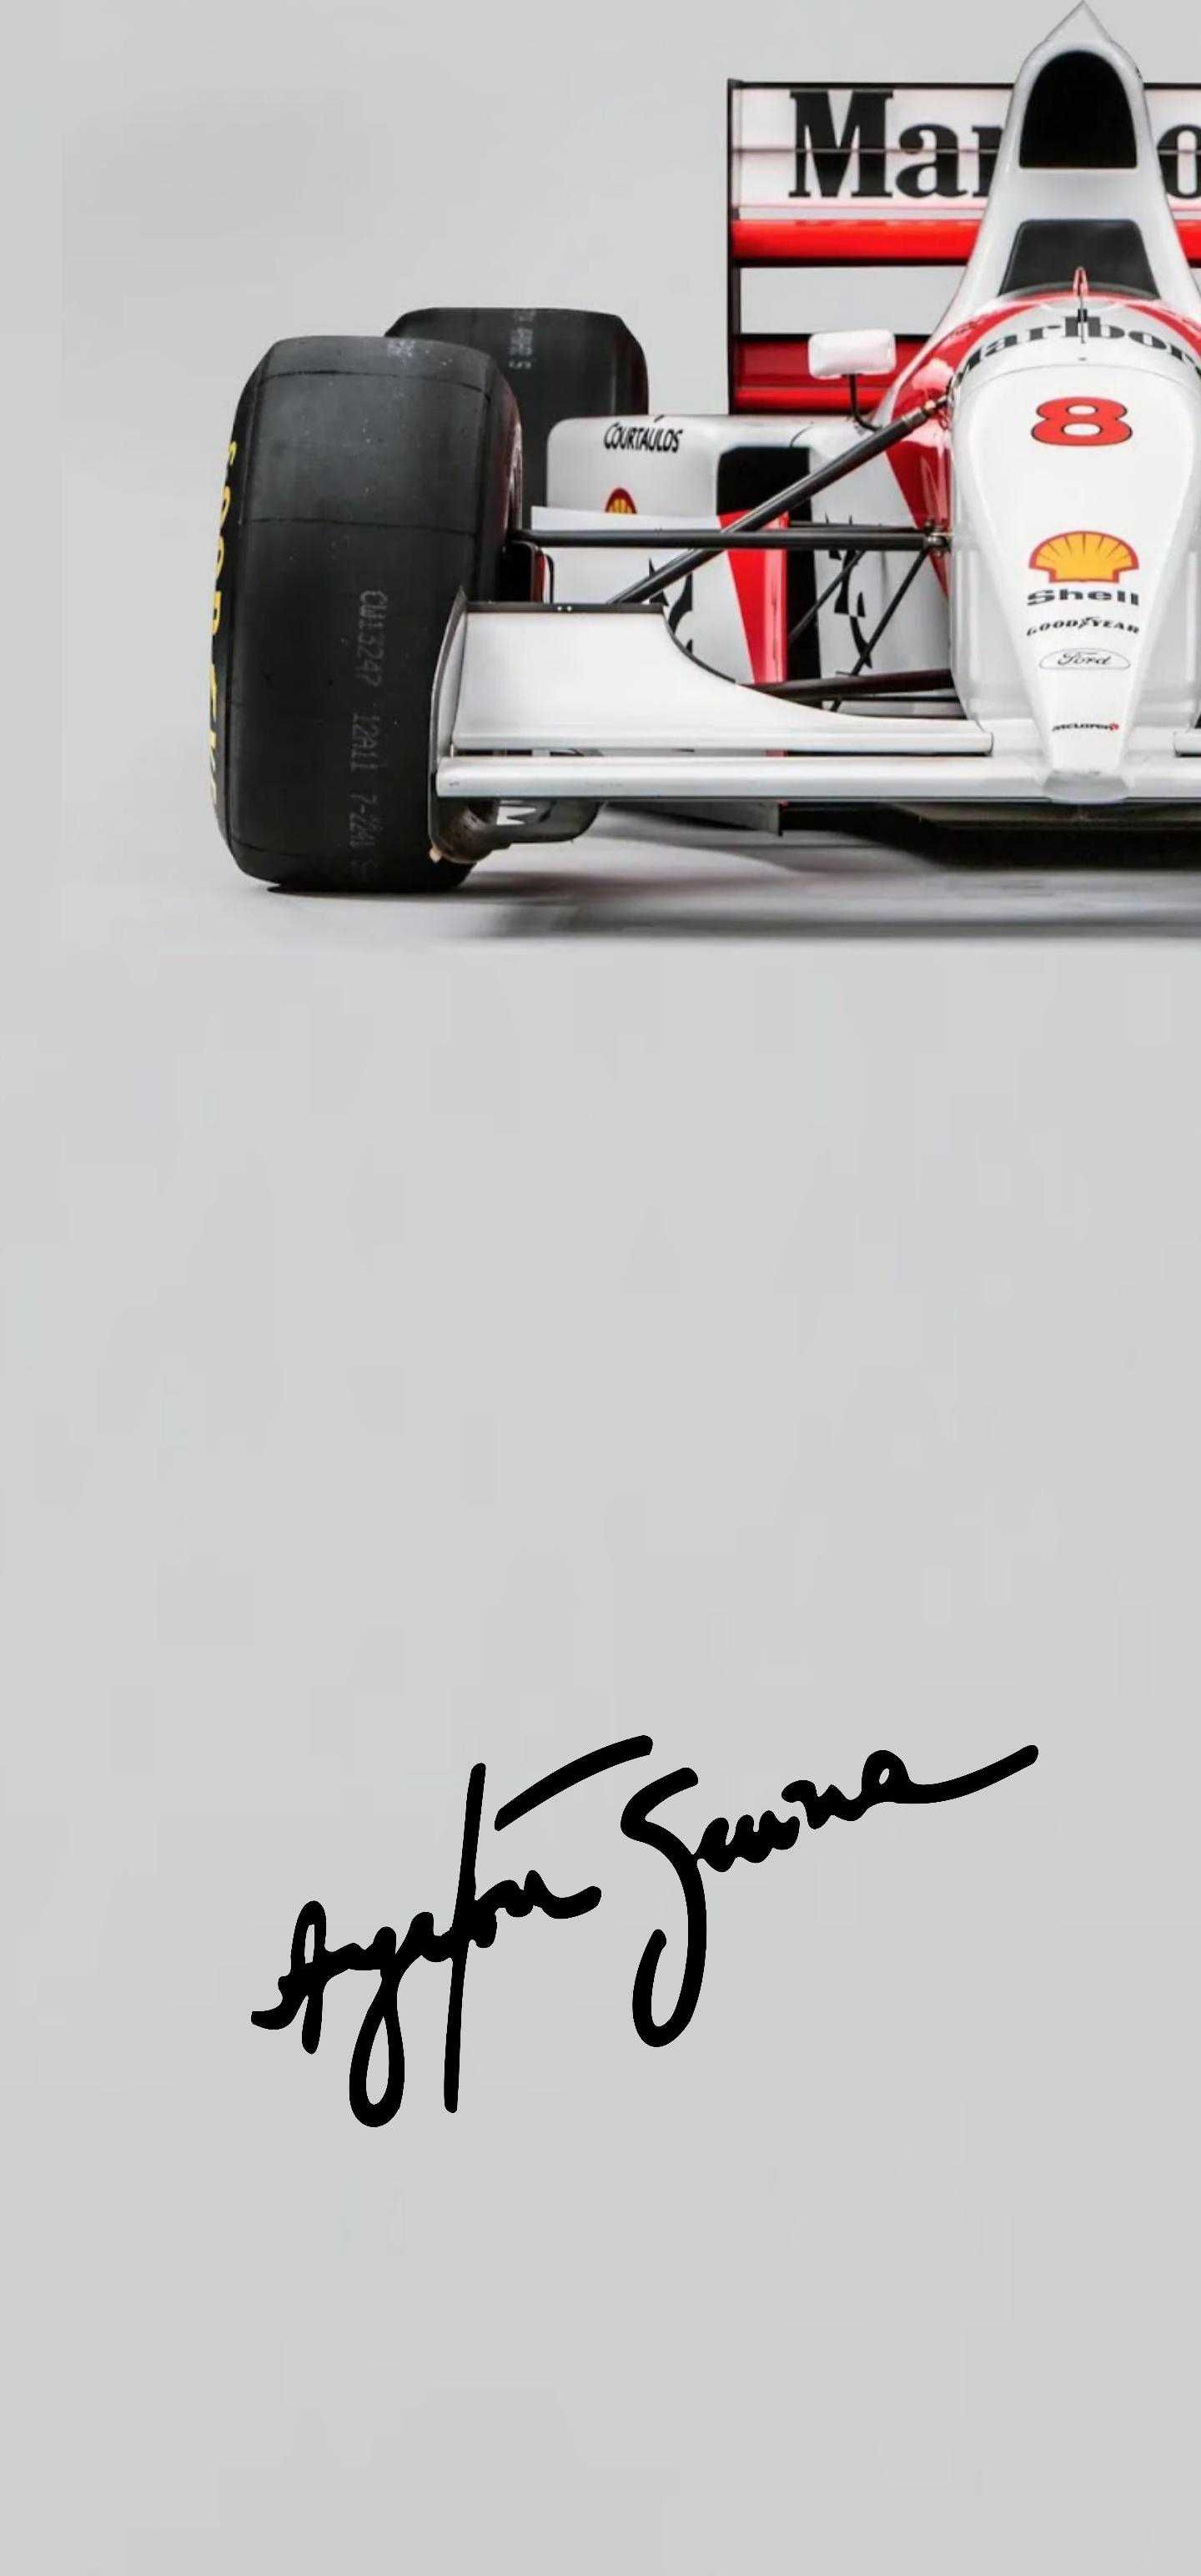 Senna Wallpaper. Samsung